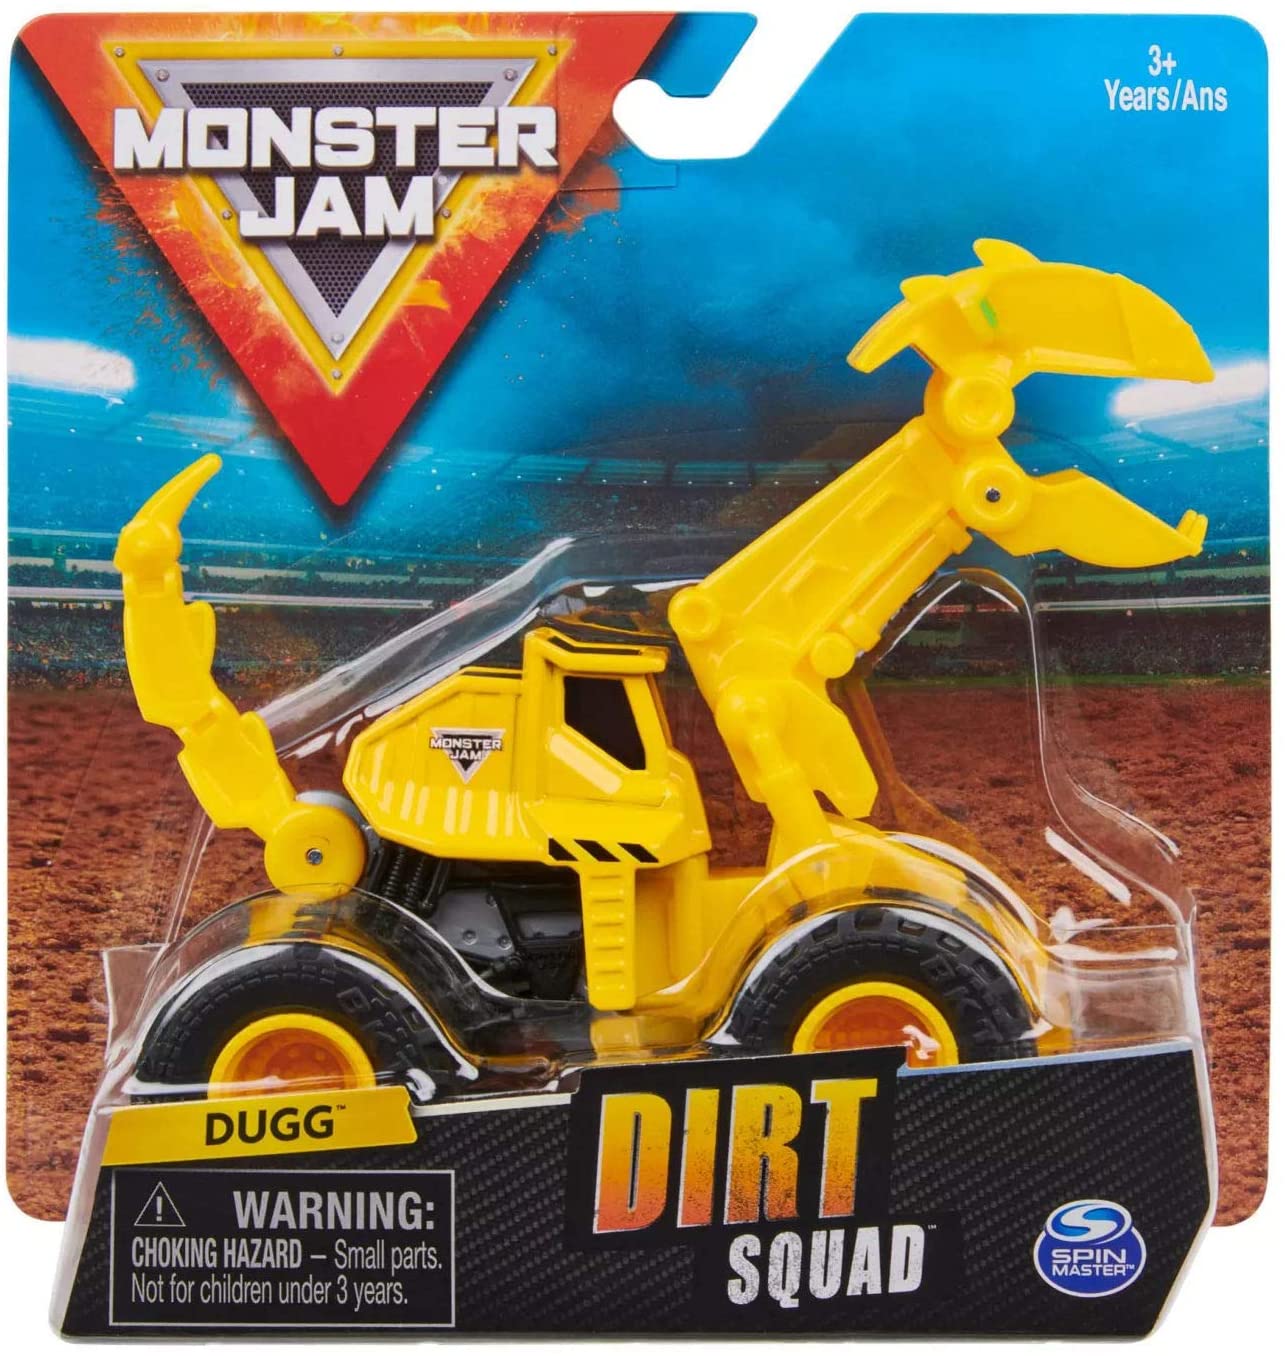 Monster Jam: Dirt Squad